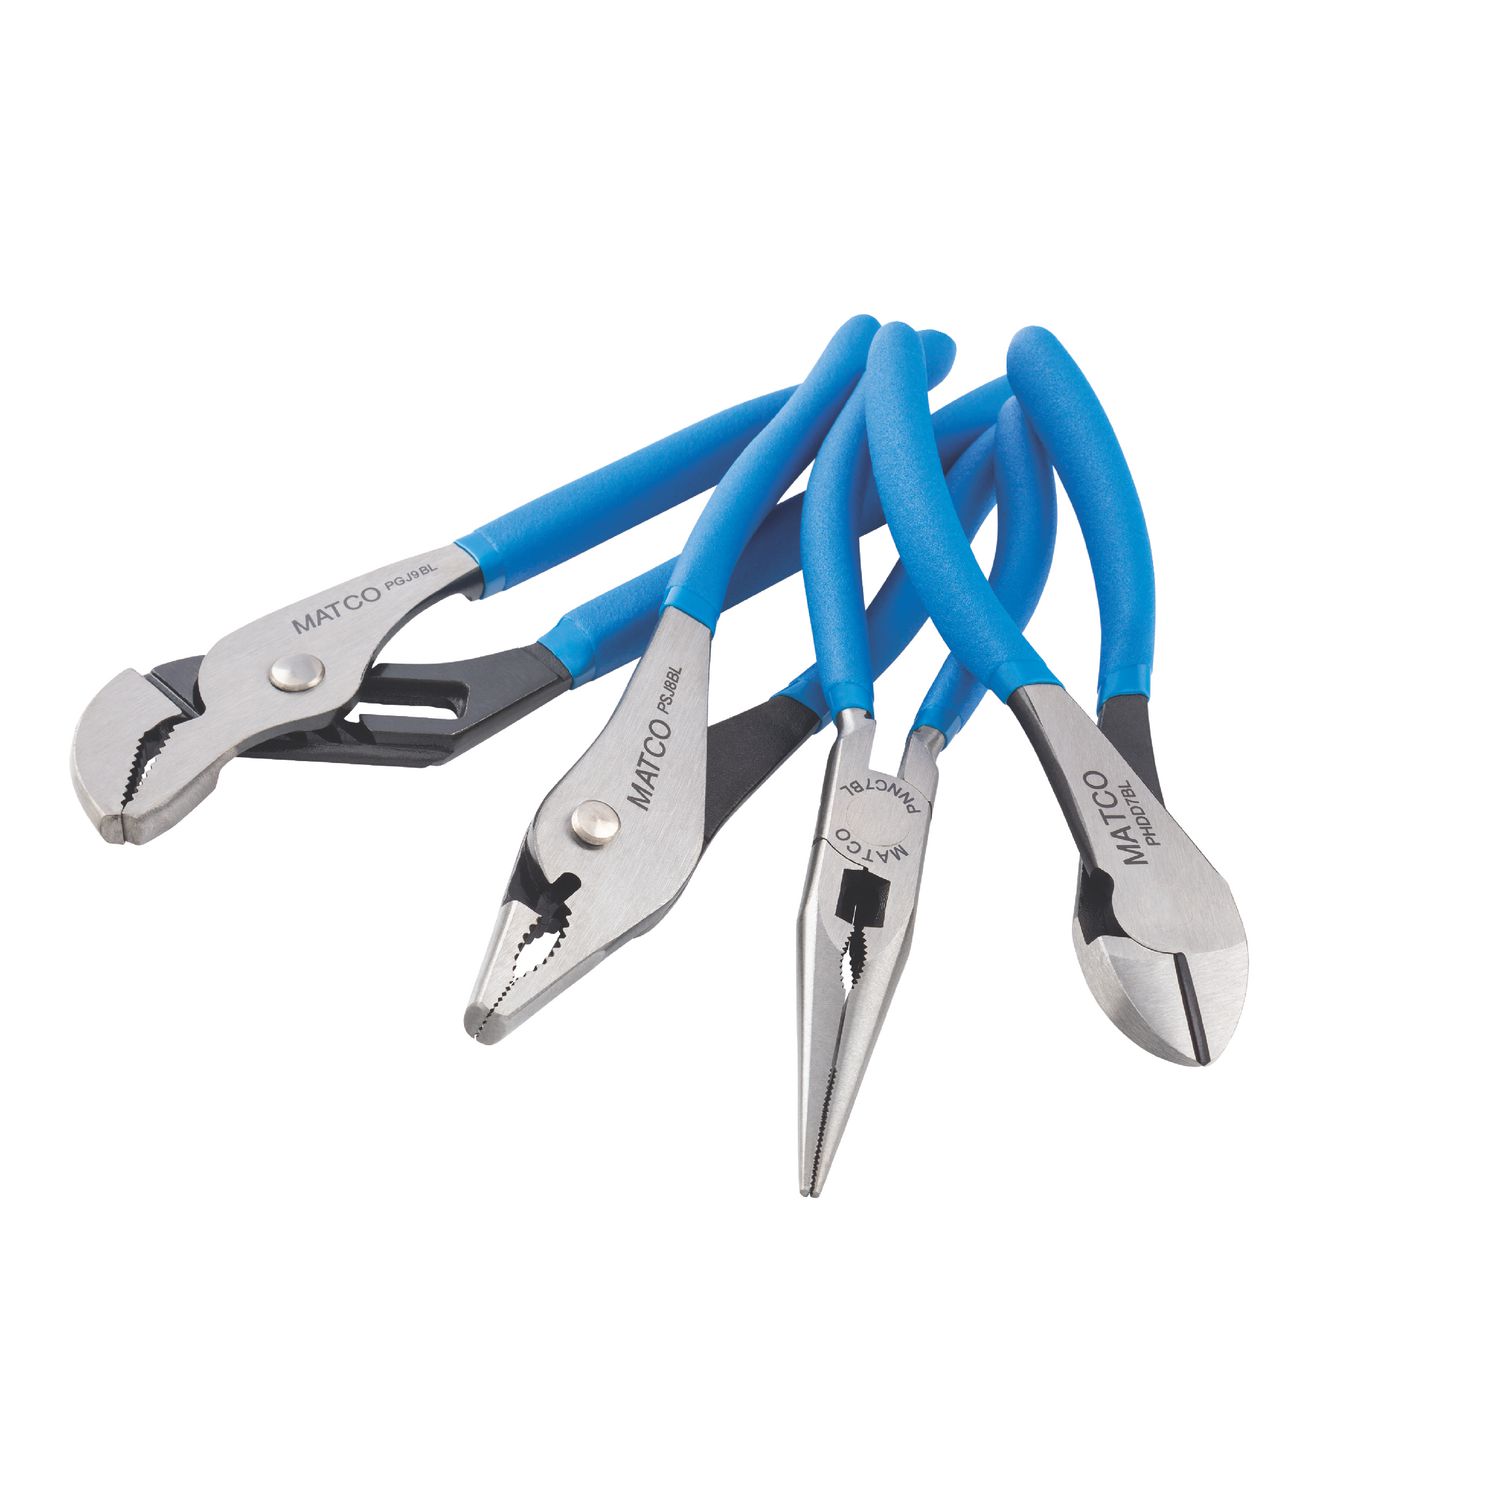 3 Piece Slip Joint Pliers Set PL3S | Matco Tools